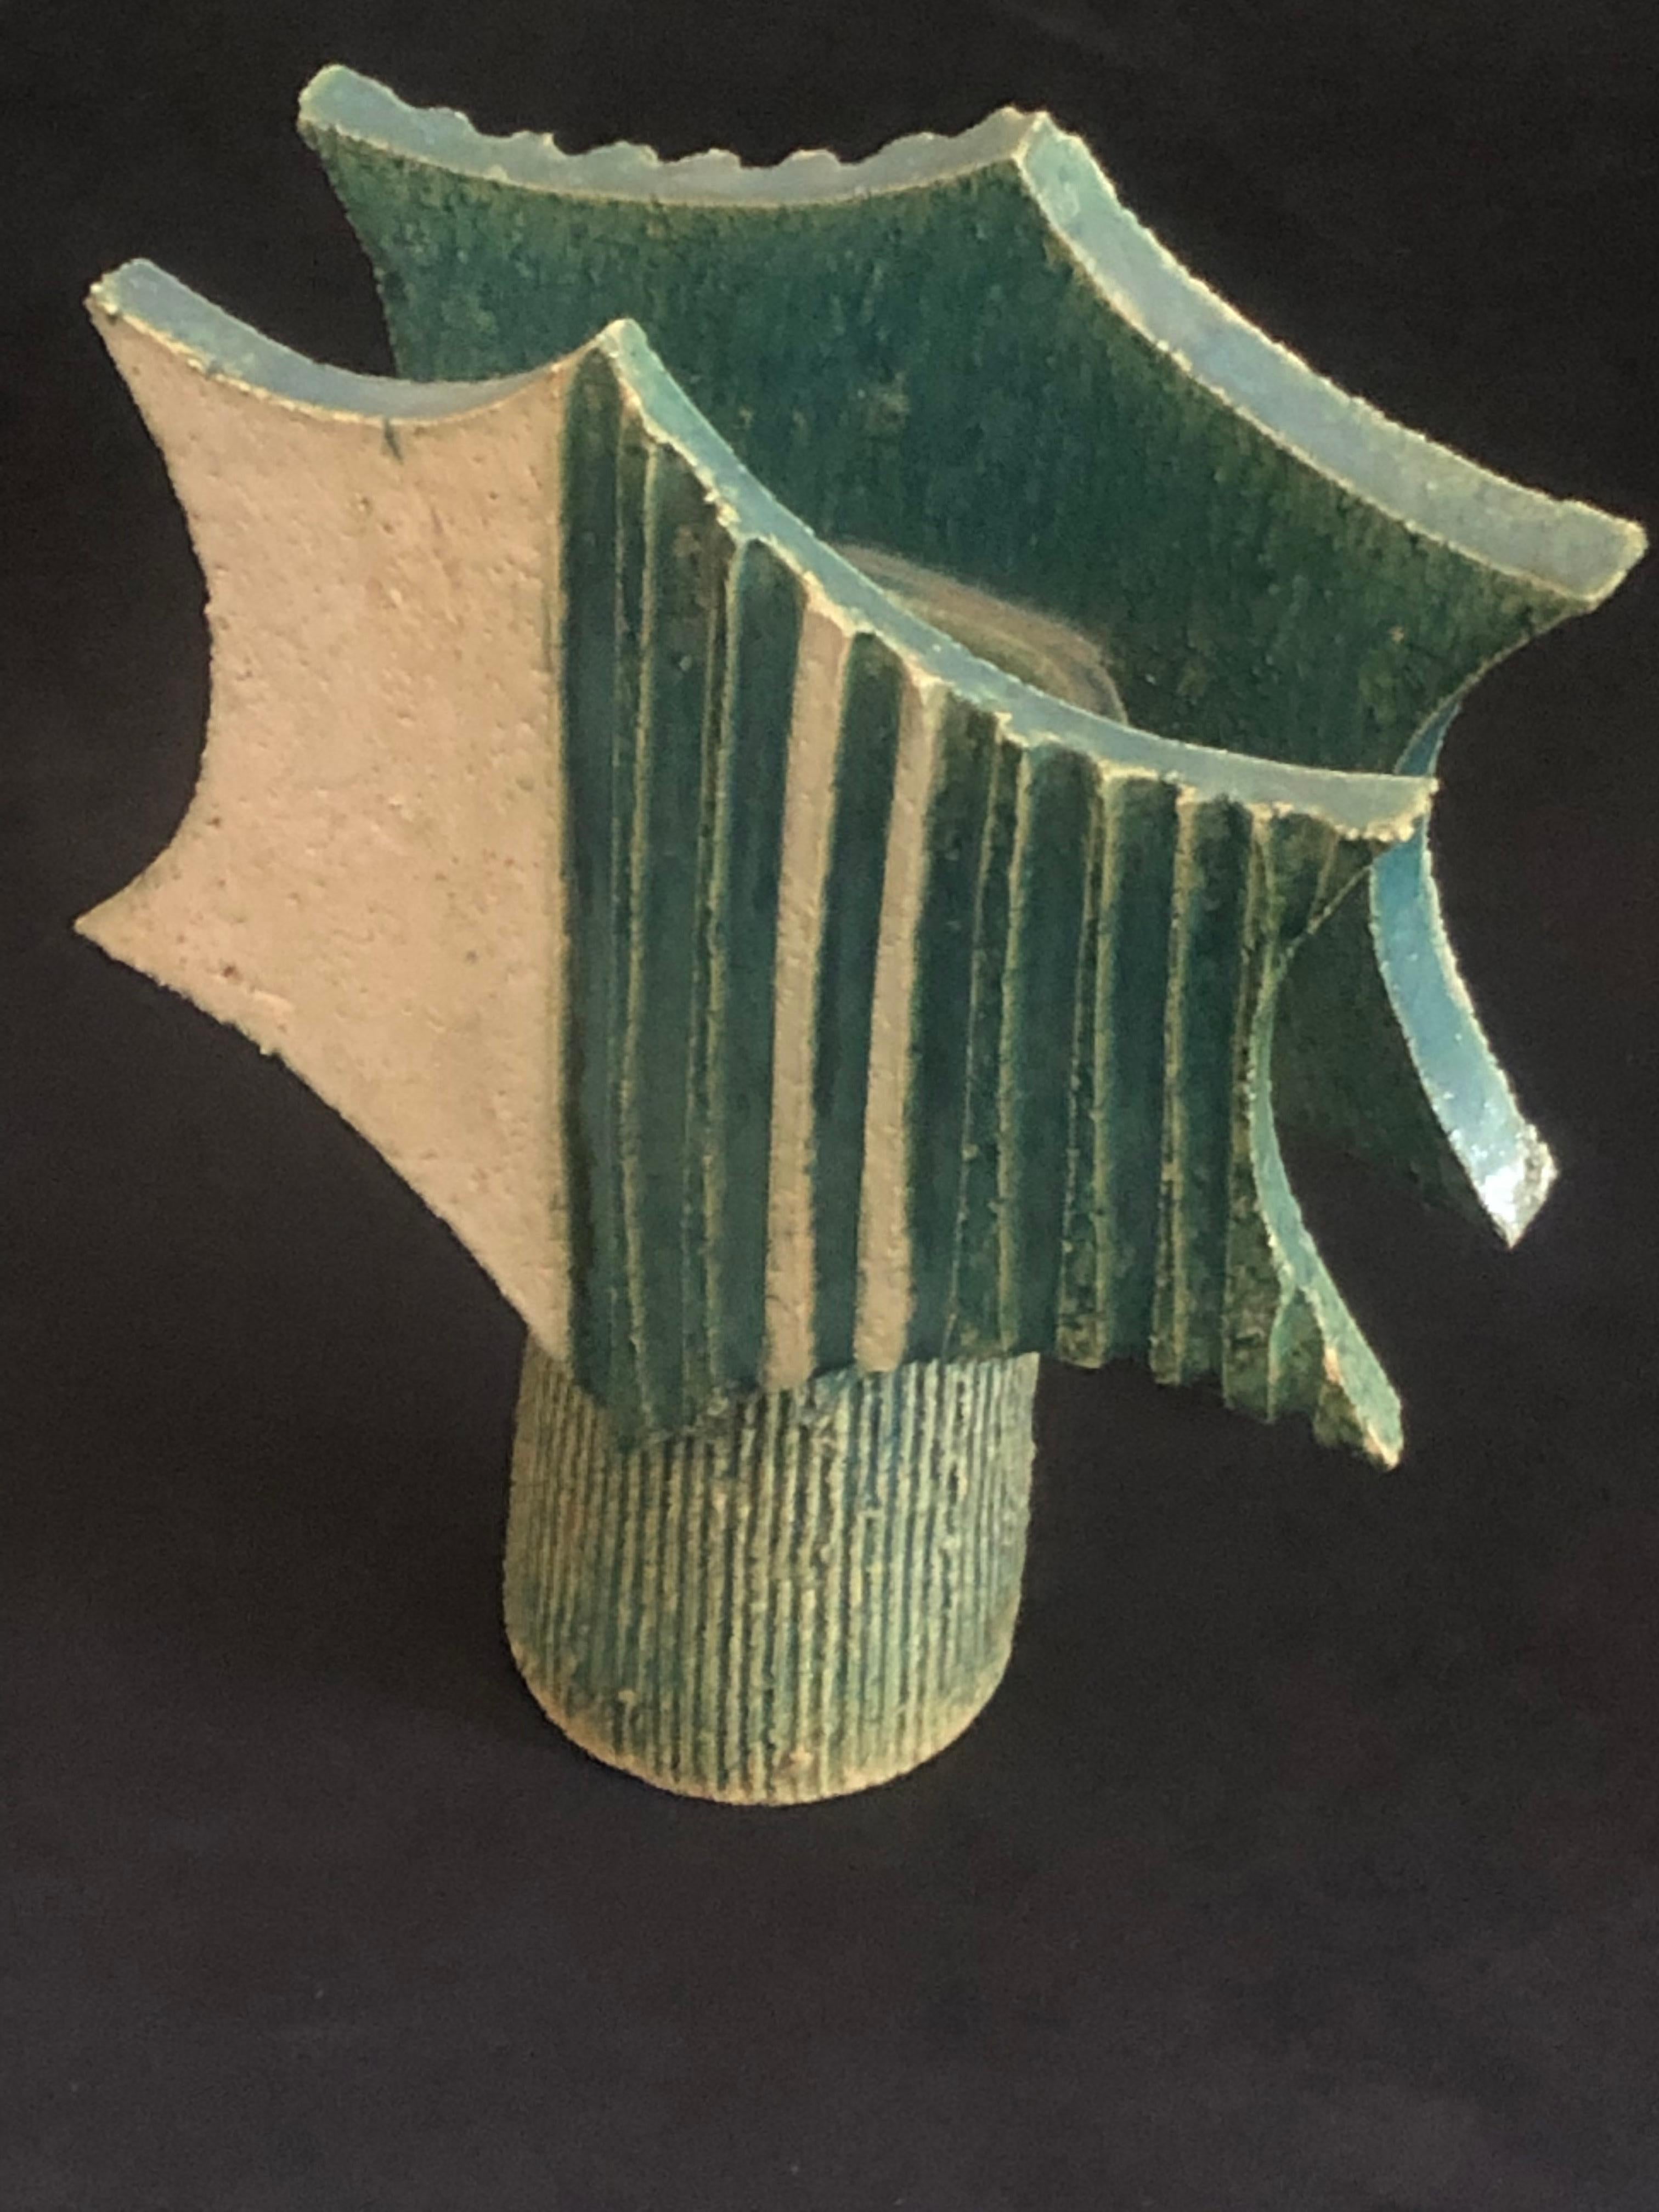 Eine Japanase Ikebana Studio Keramik Vase aus den 1960er Jahren.

Sternförmige Tafeln mit zentraler Zylindervase mit vertikalen Rillen, die mit einer cremefarbenen und grünen Glasur versehen sind.

Stempel 'Made in Japan' auf dem Sockel.

Ikebana